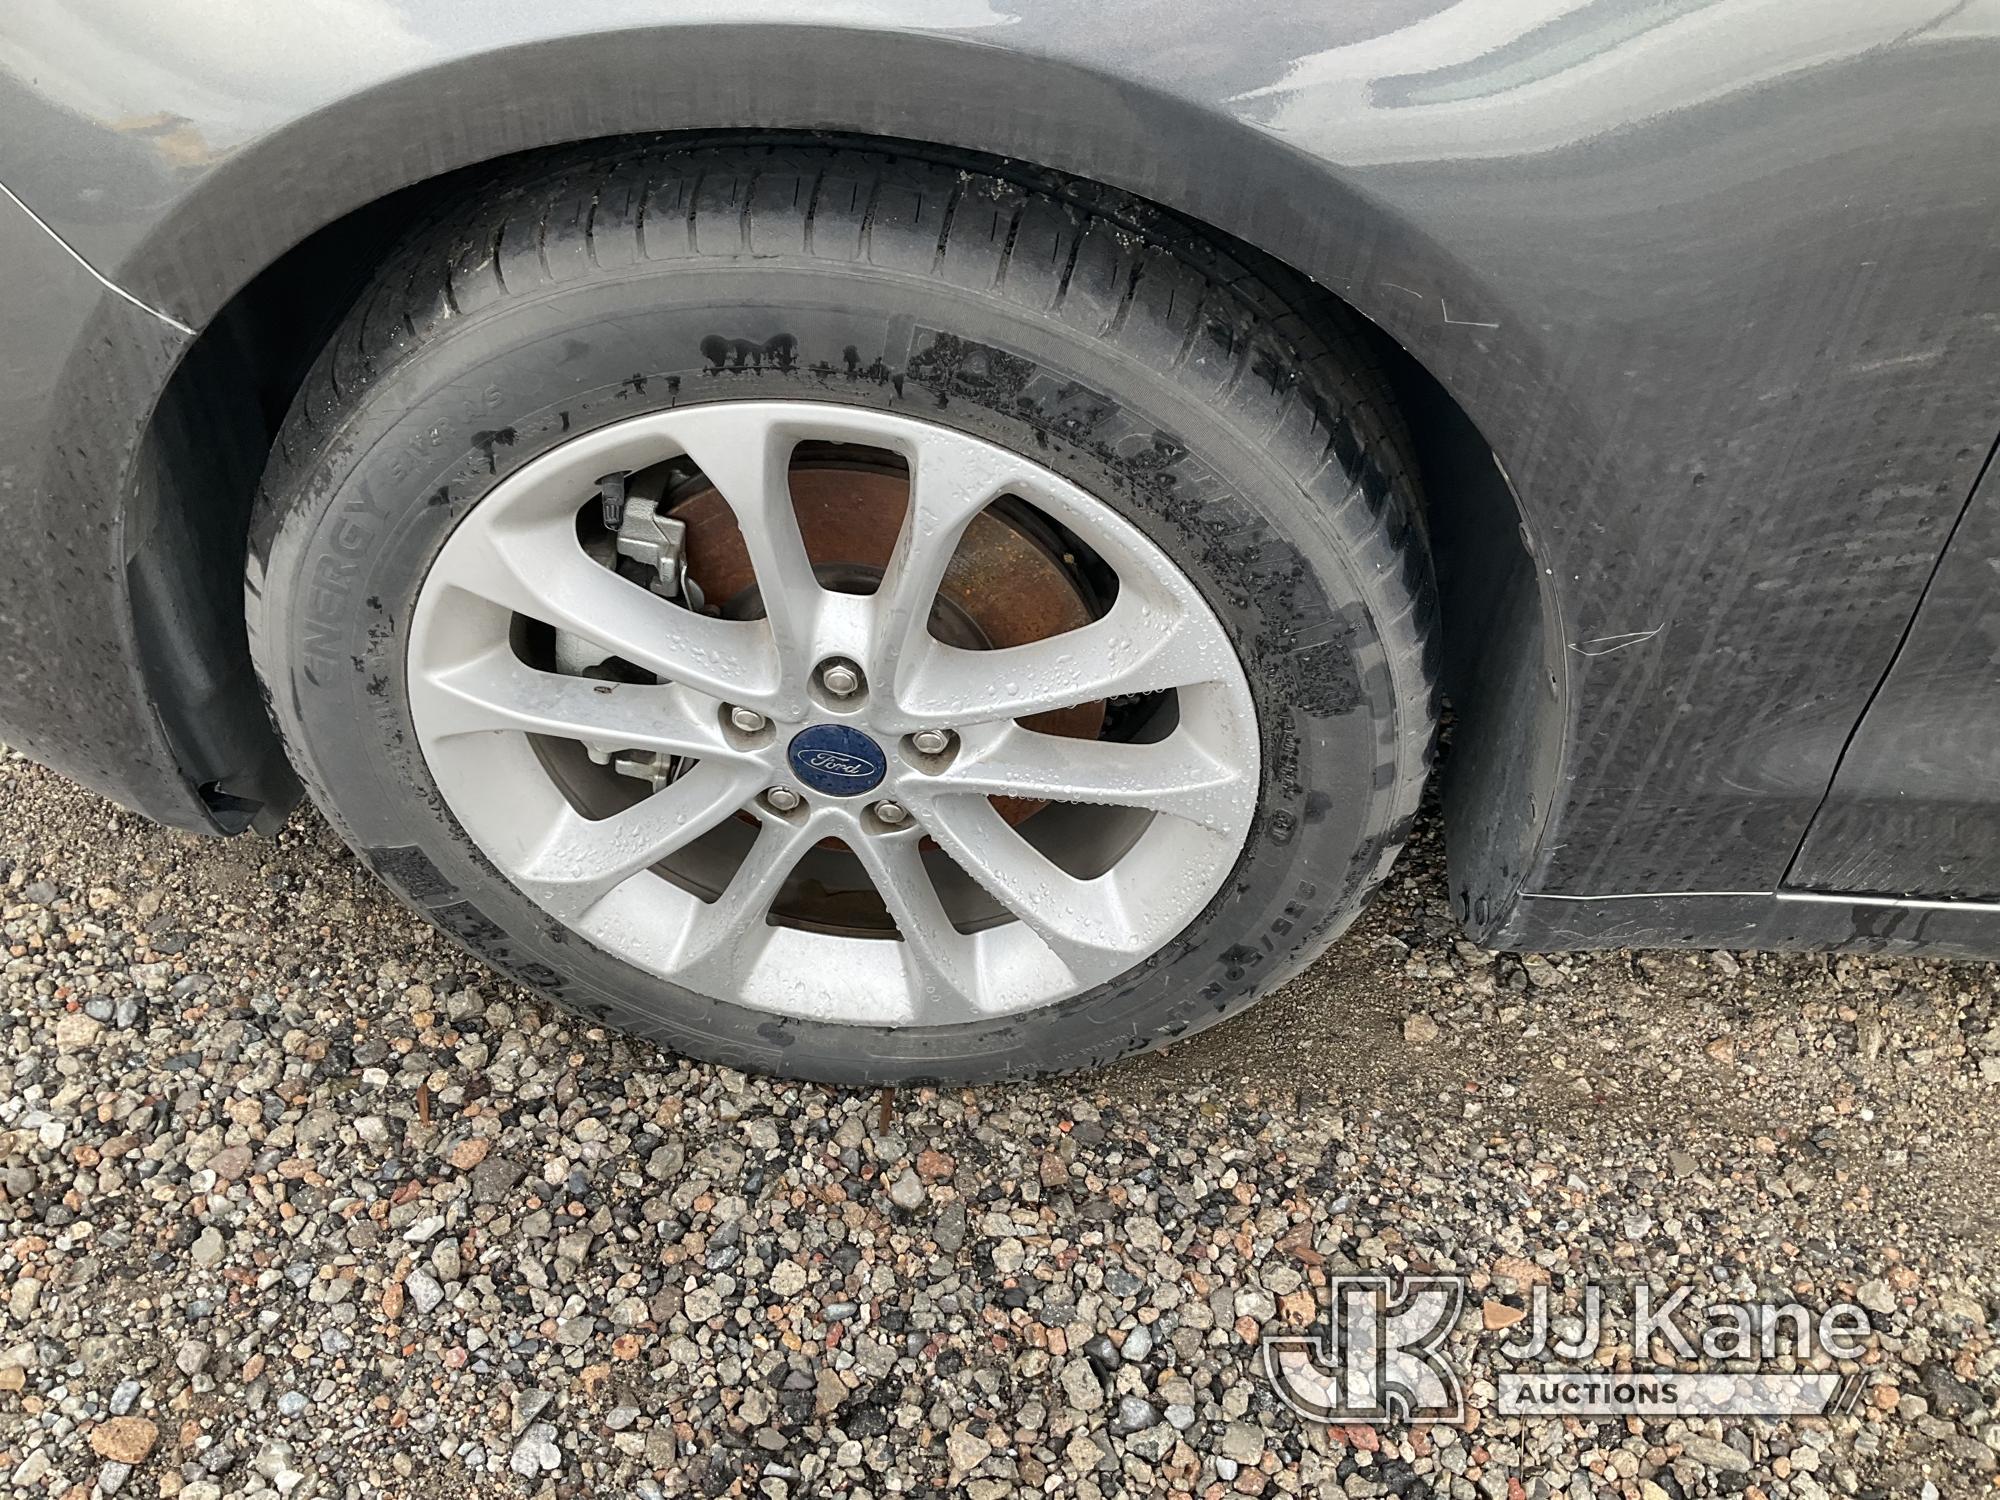 (Jurupa Valley, CA) 2019 Ford Fusion 4-Door Sedan Not Running, Interior Parts Stripped, Rear End Dam